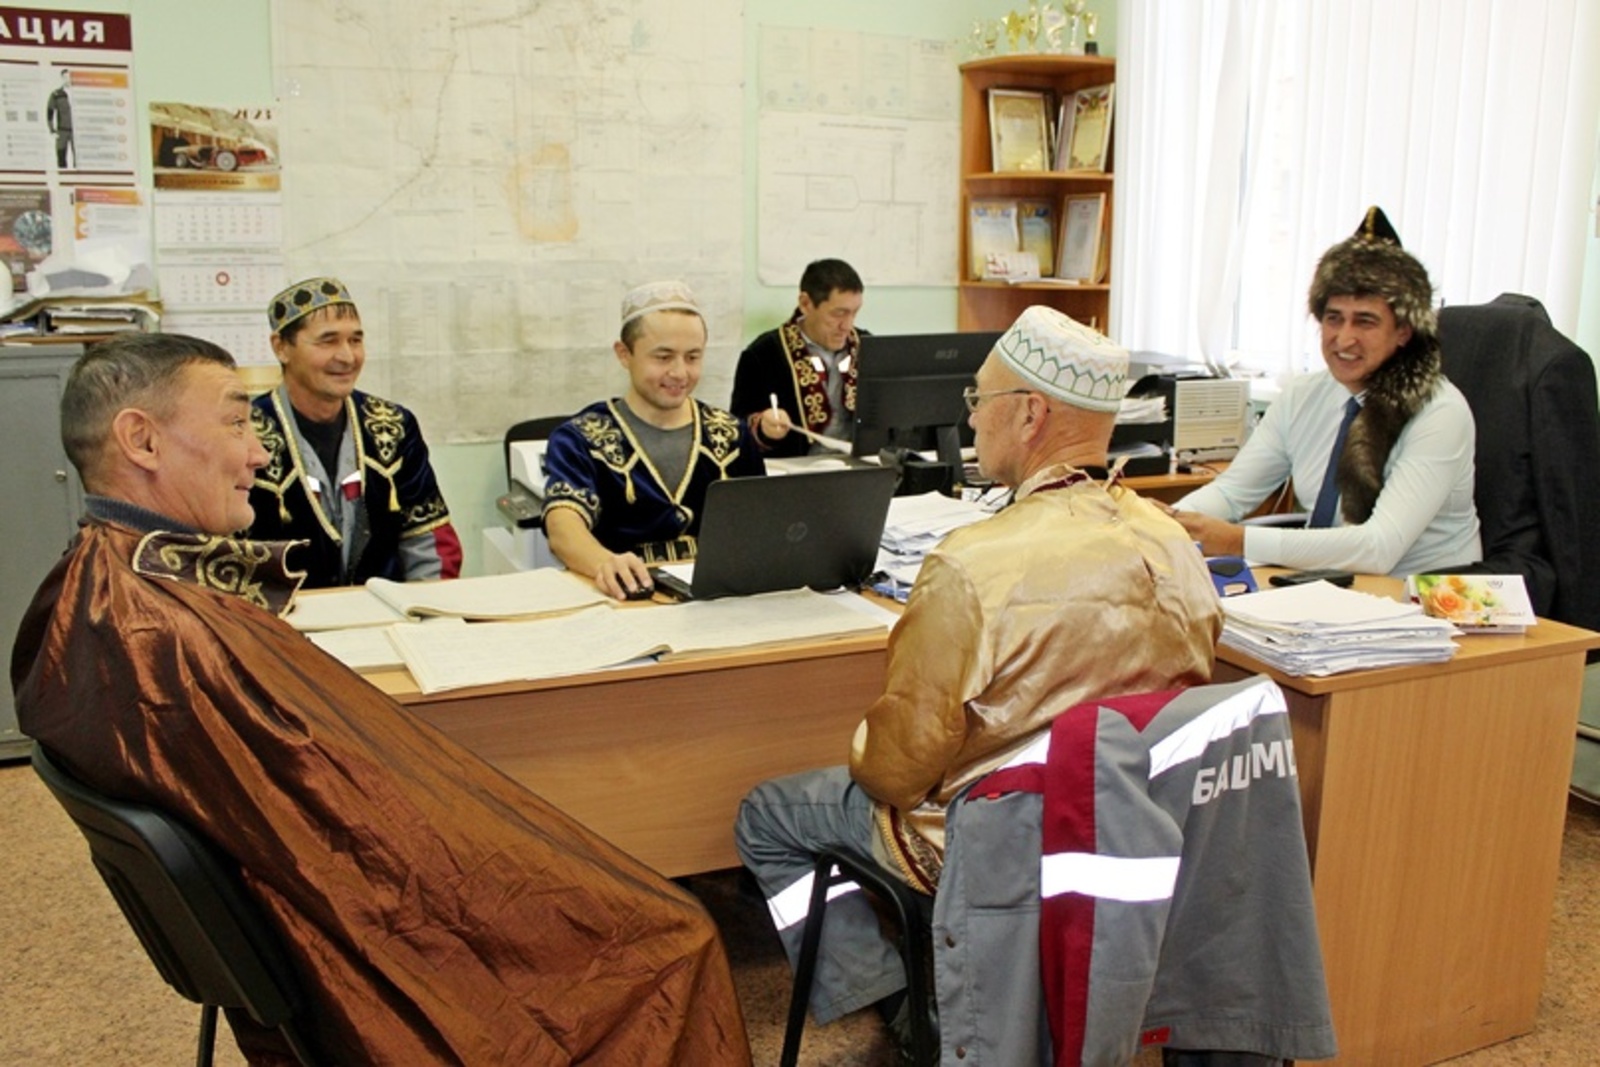 Работники ООО "Башмедь" пришли на работу в национальных костюмах